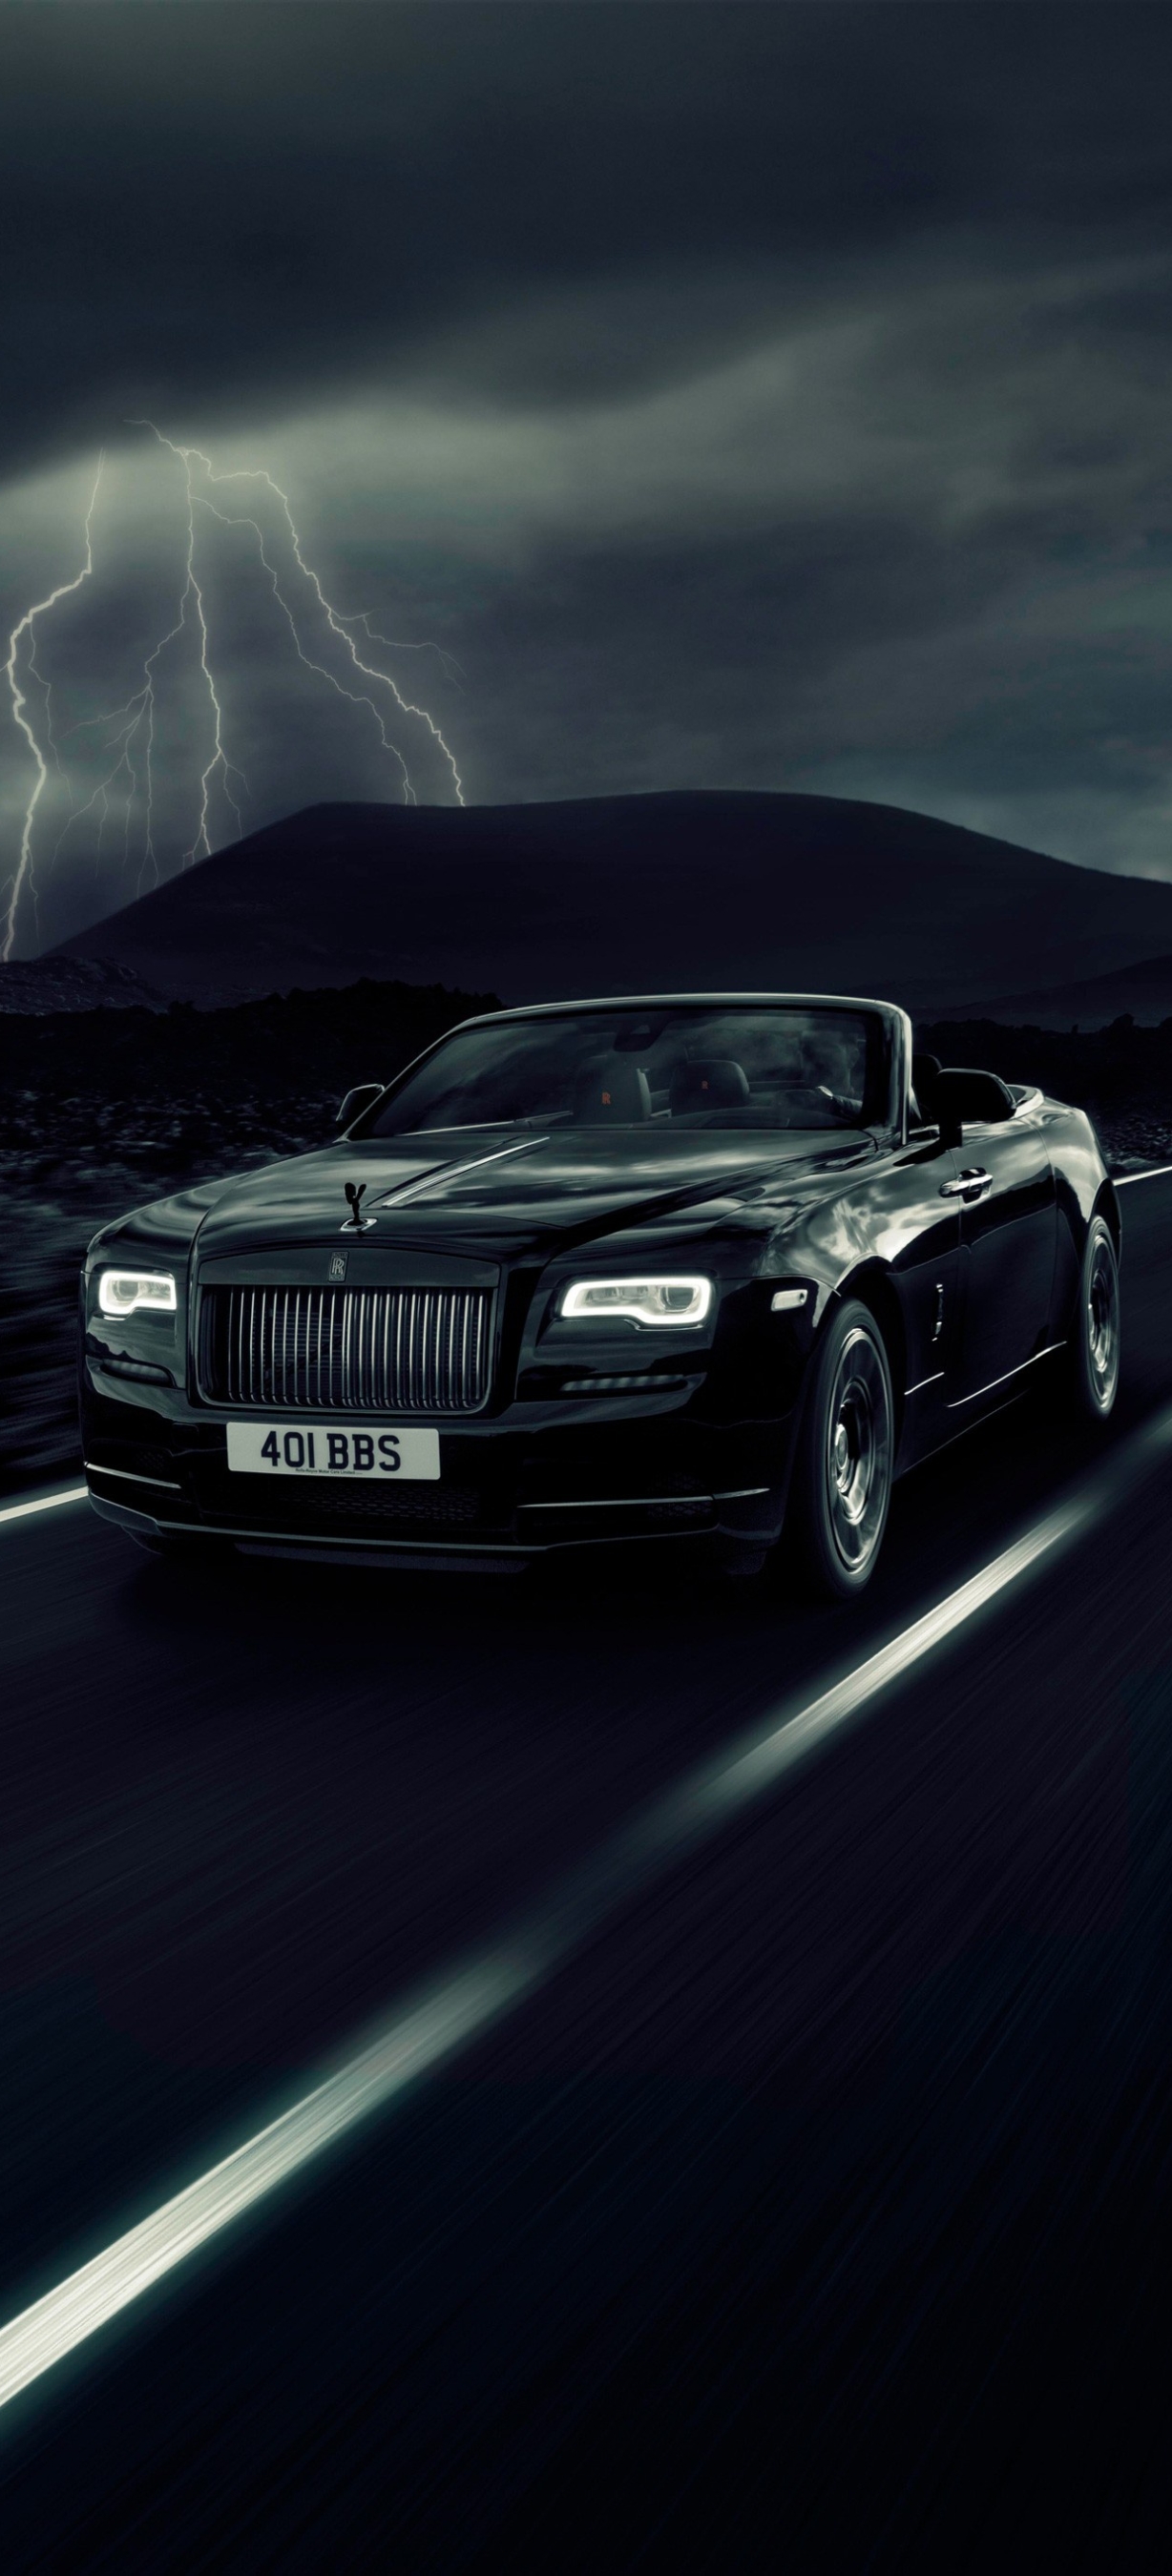 Descarga gratuita de fondo de pantalla para móvil de Rolls Royce, Coche, Gran Turismo, Vehículos, Coche Negro, Rolls Royce Amanecer.